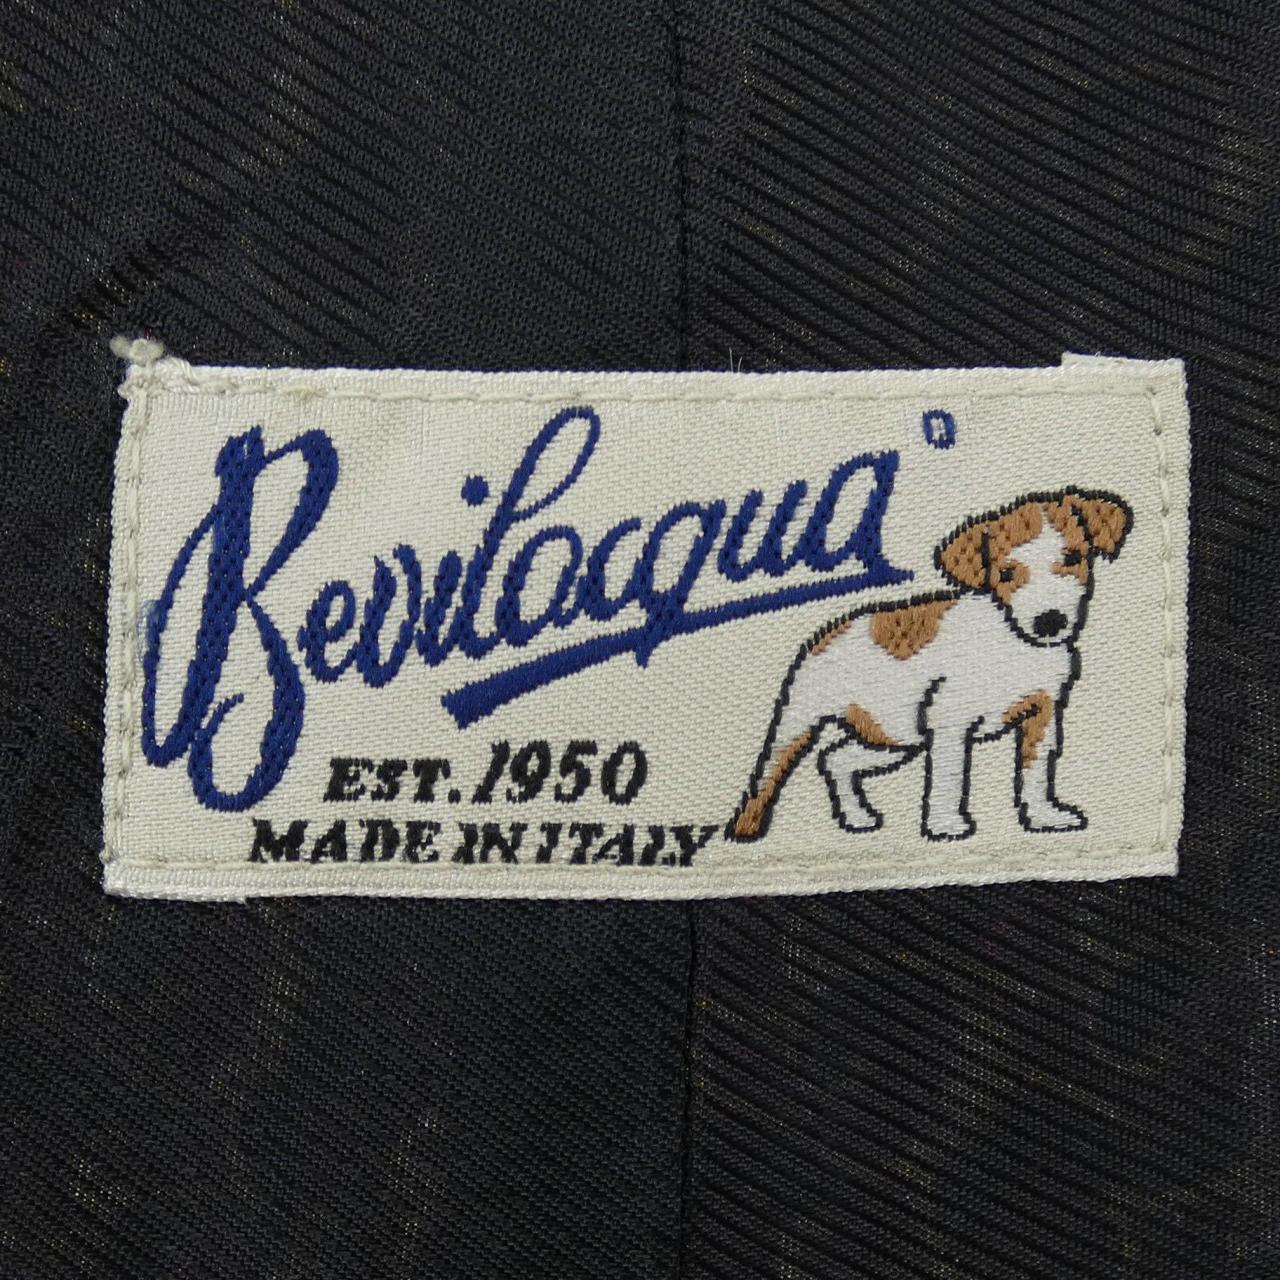 Bevilacqua vest